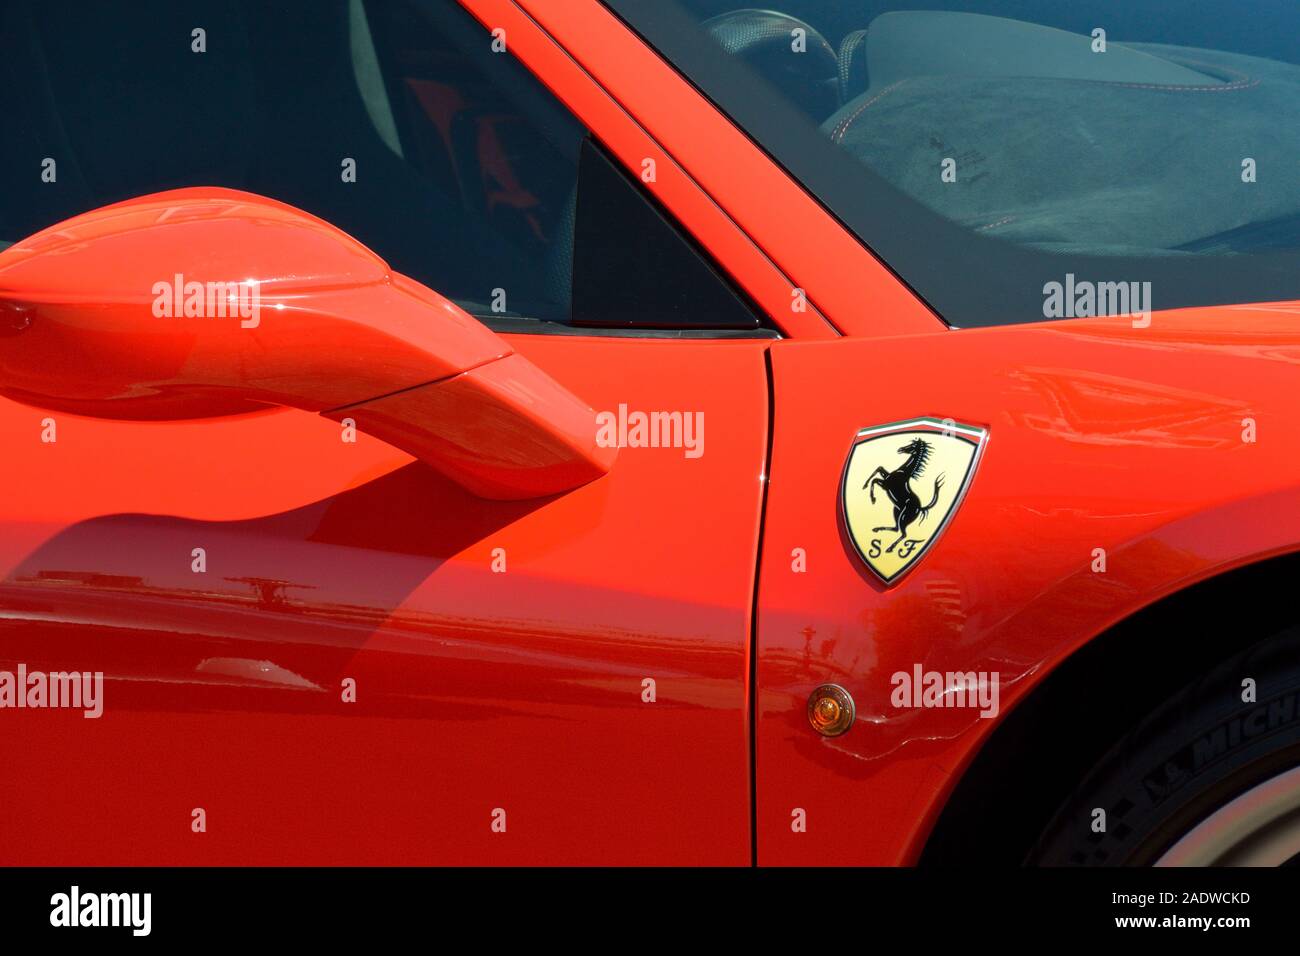 Il cavallino rampante cavallino rampante badge sulla Ferrari 458 Italia Speciale Foto Stock